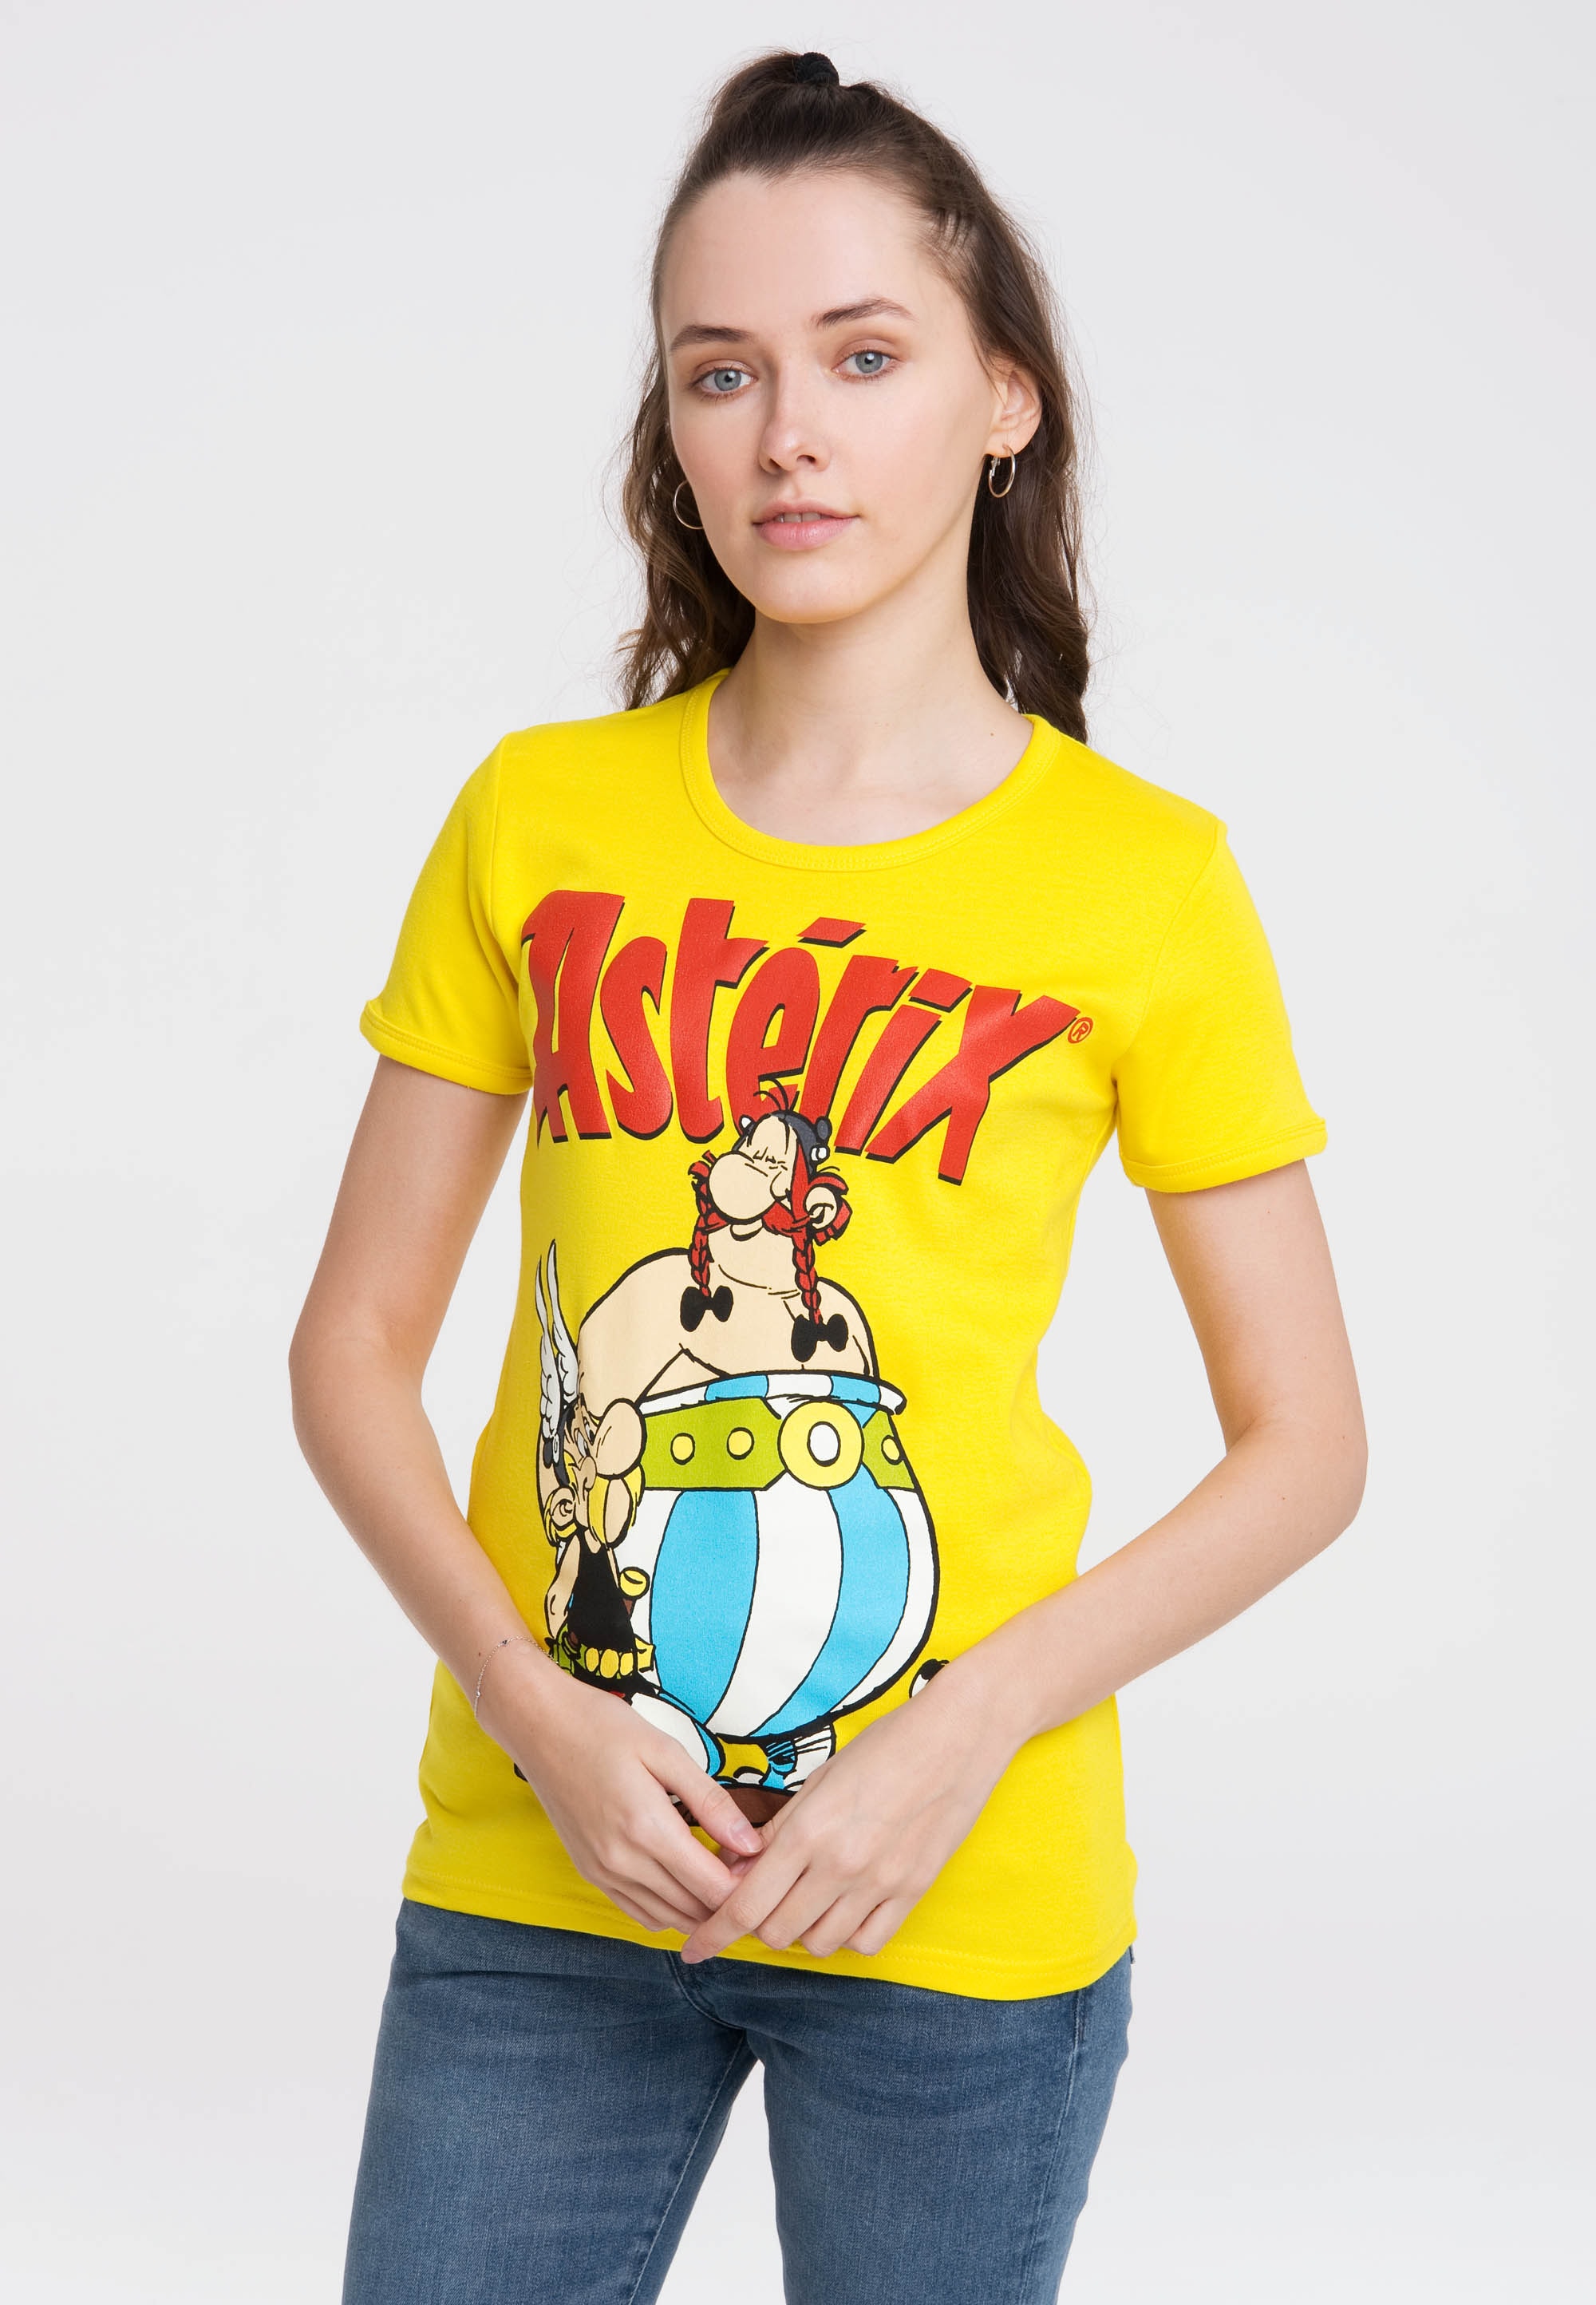 Gallier«, BAUR bestellen lizenziertem »Asterix | T-Shirt der LOGOSHIRT mit Originaldesign